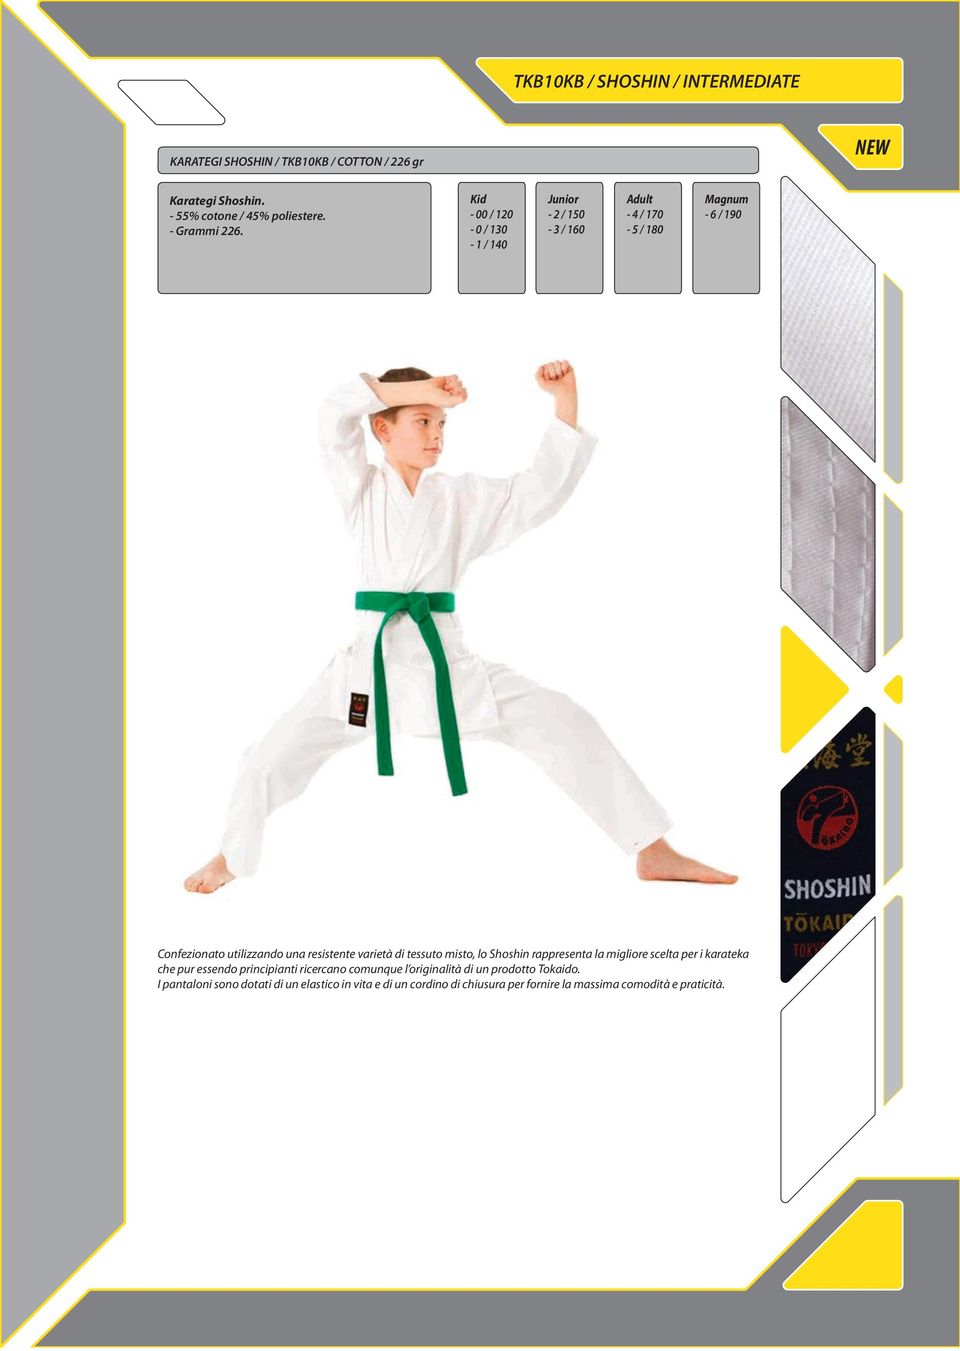 di tessuto misto, lo Shoshin rappresenta la migliore scelta per i karateka che pur essendo principianti ricercano comunque l originalità di un